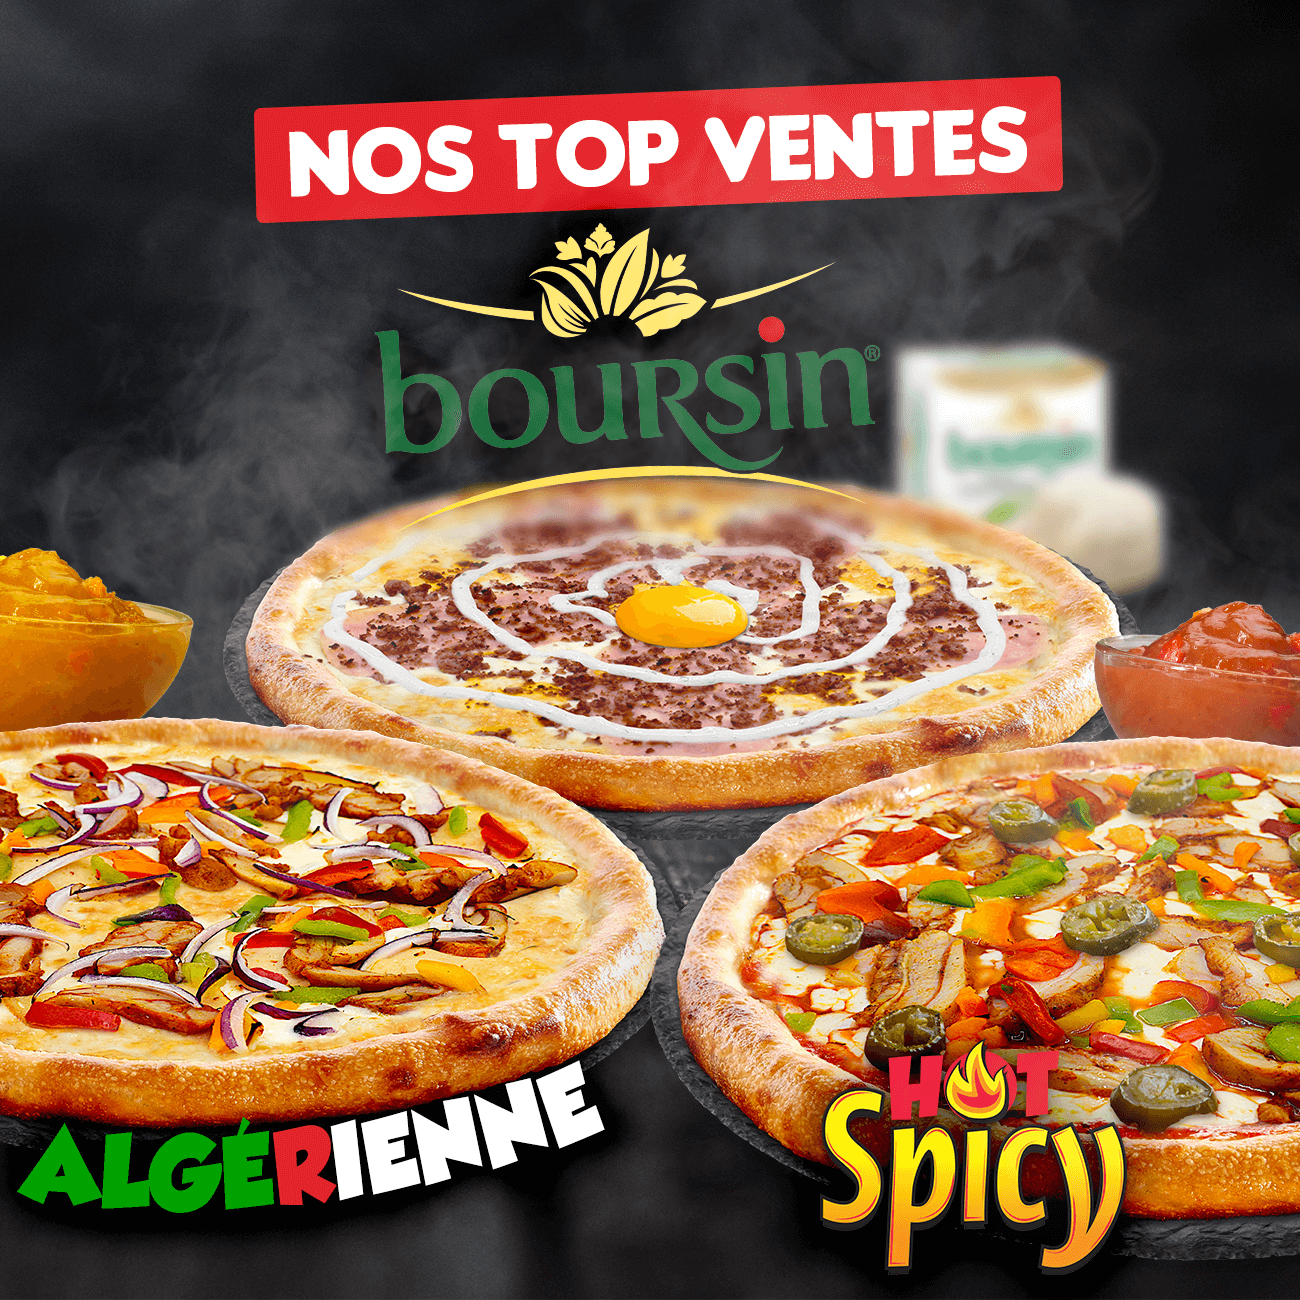 Top Ventes : Pizza Méxicaine, Boursin et Hot Spicy